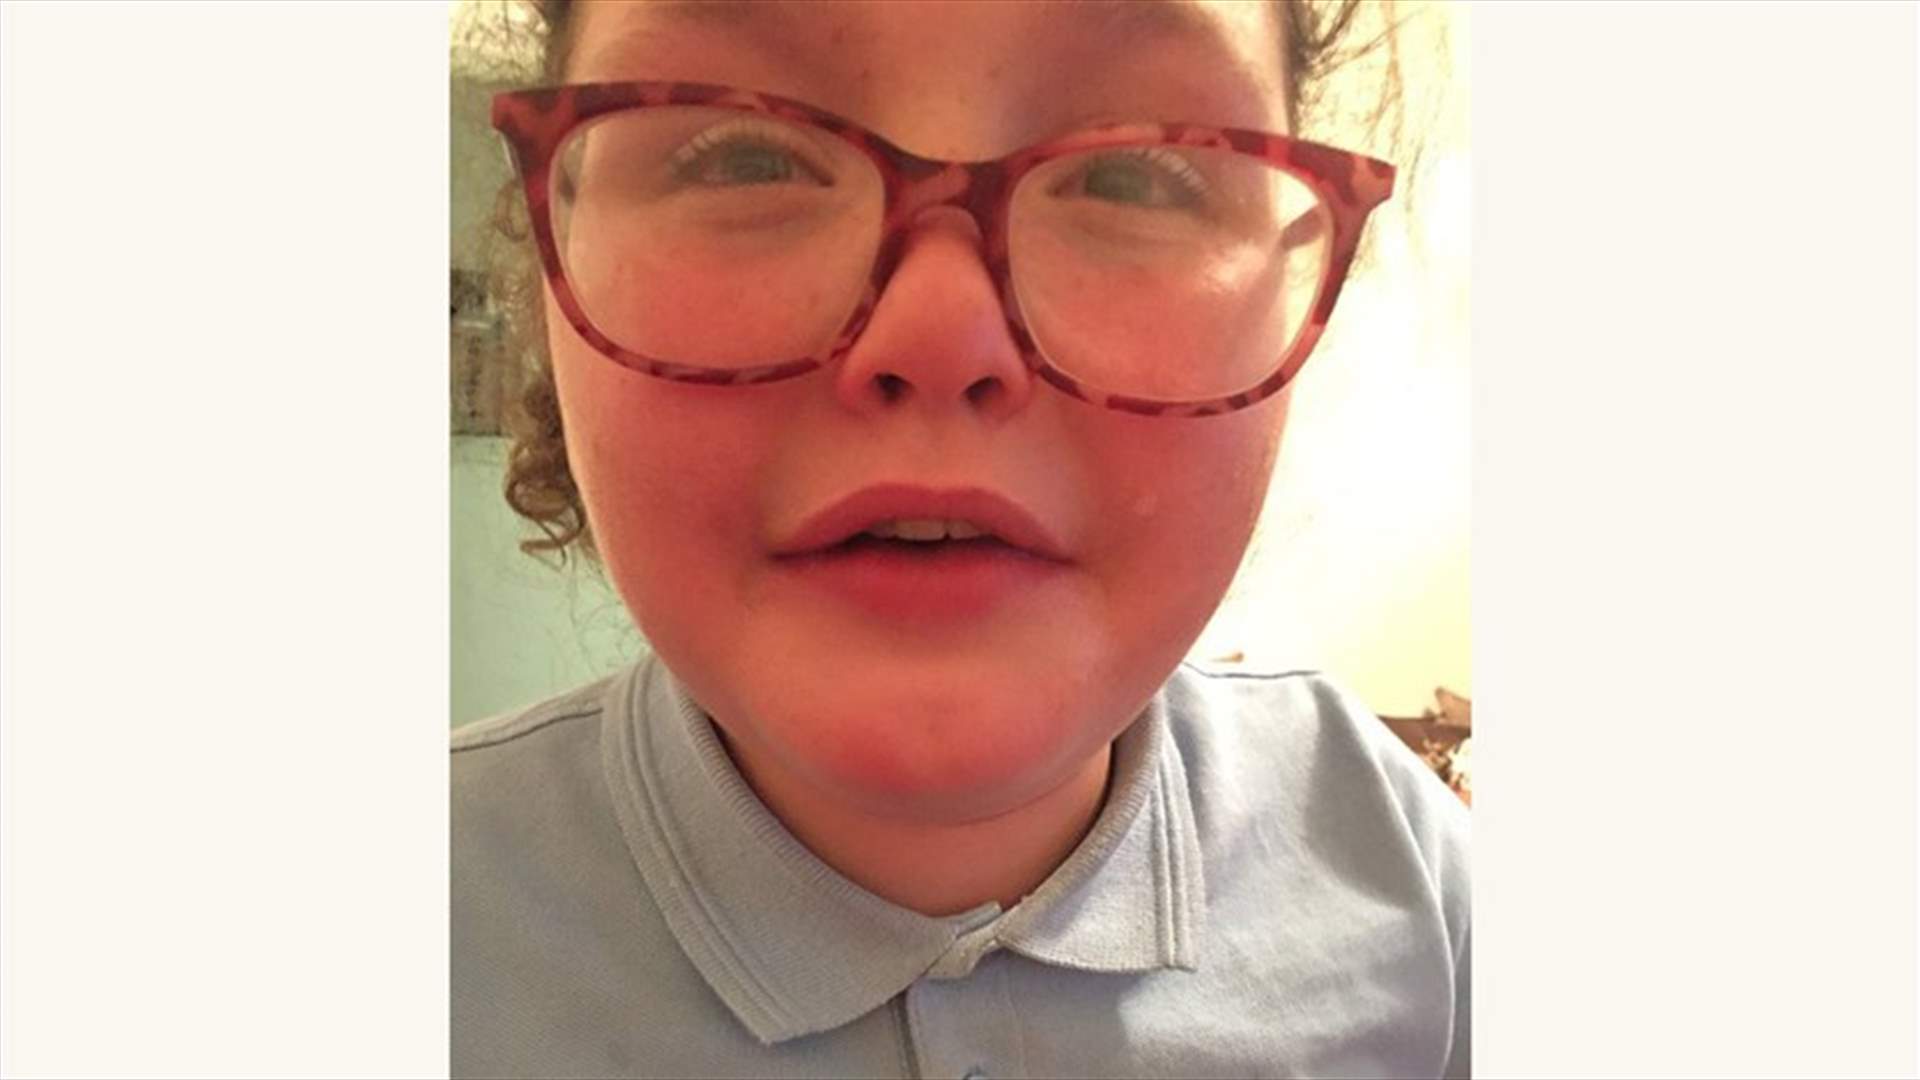 بالصورة- طفلة مصابة بالتوحد انفطر قلبها... تلقت بطاقة عيد ميلاد فيها كلمات قاسية!